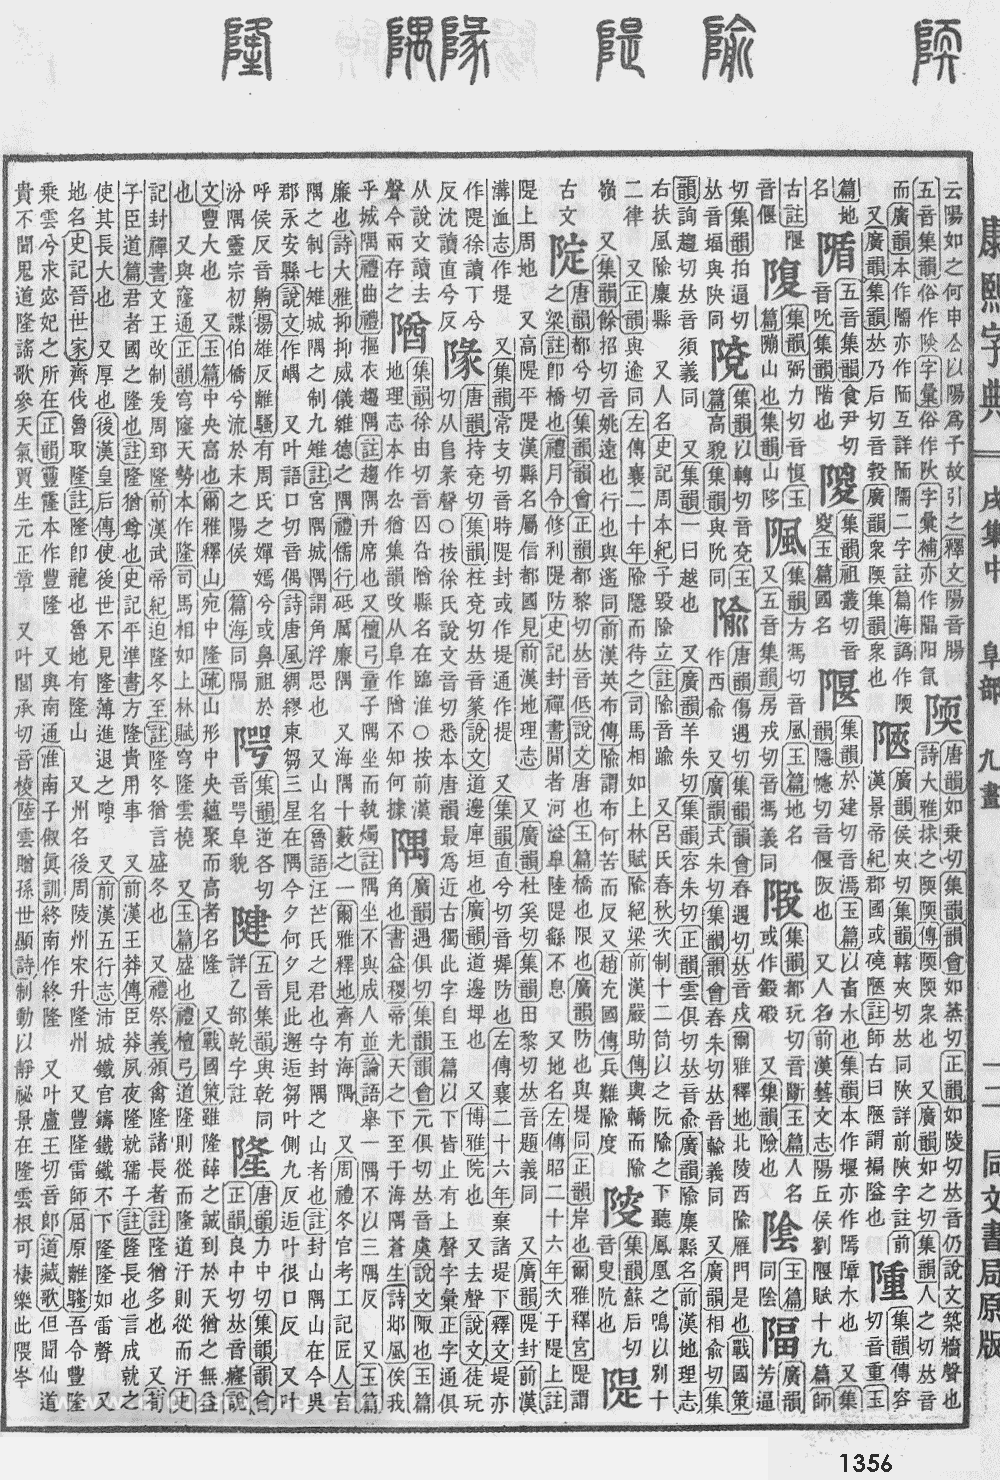 康熙字典掃描版第1356頁